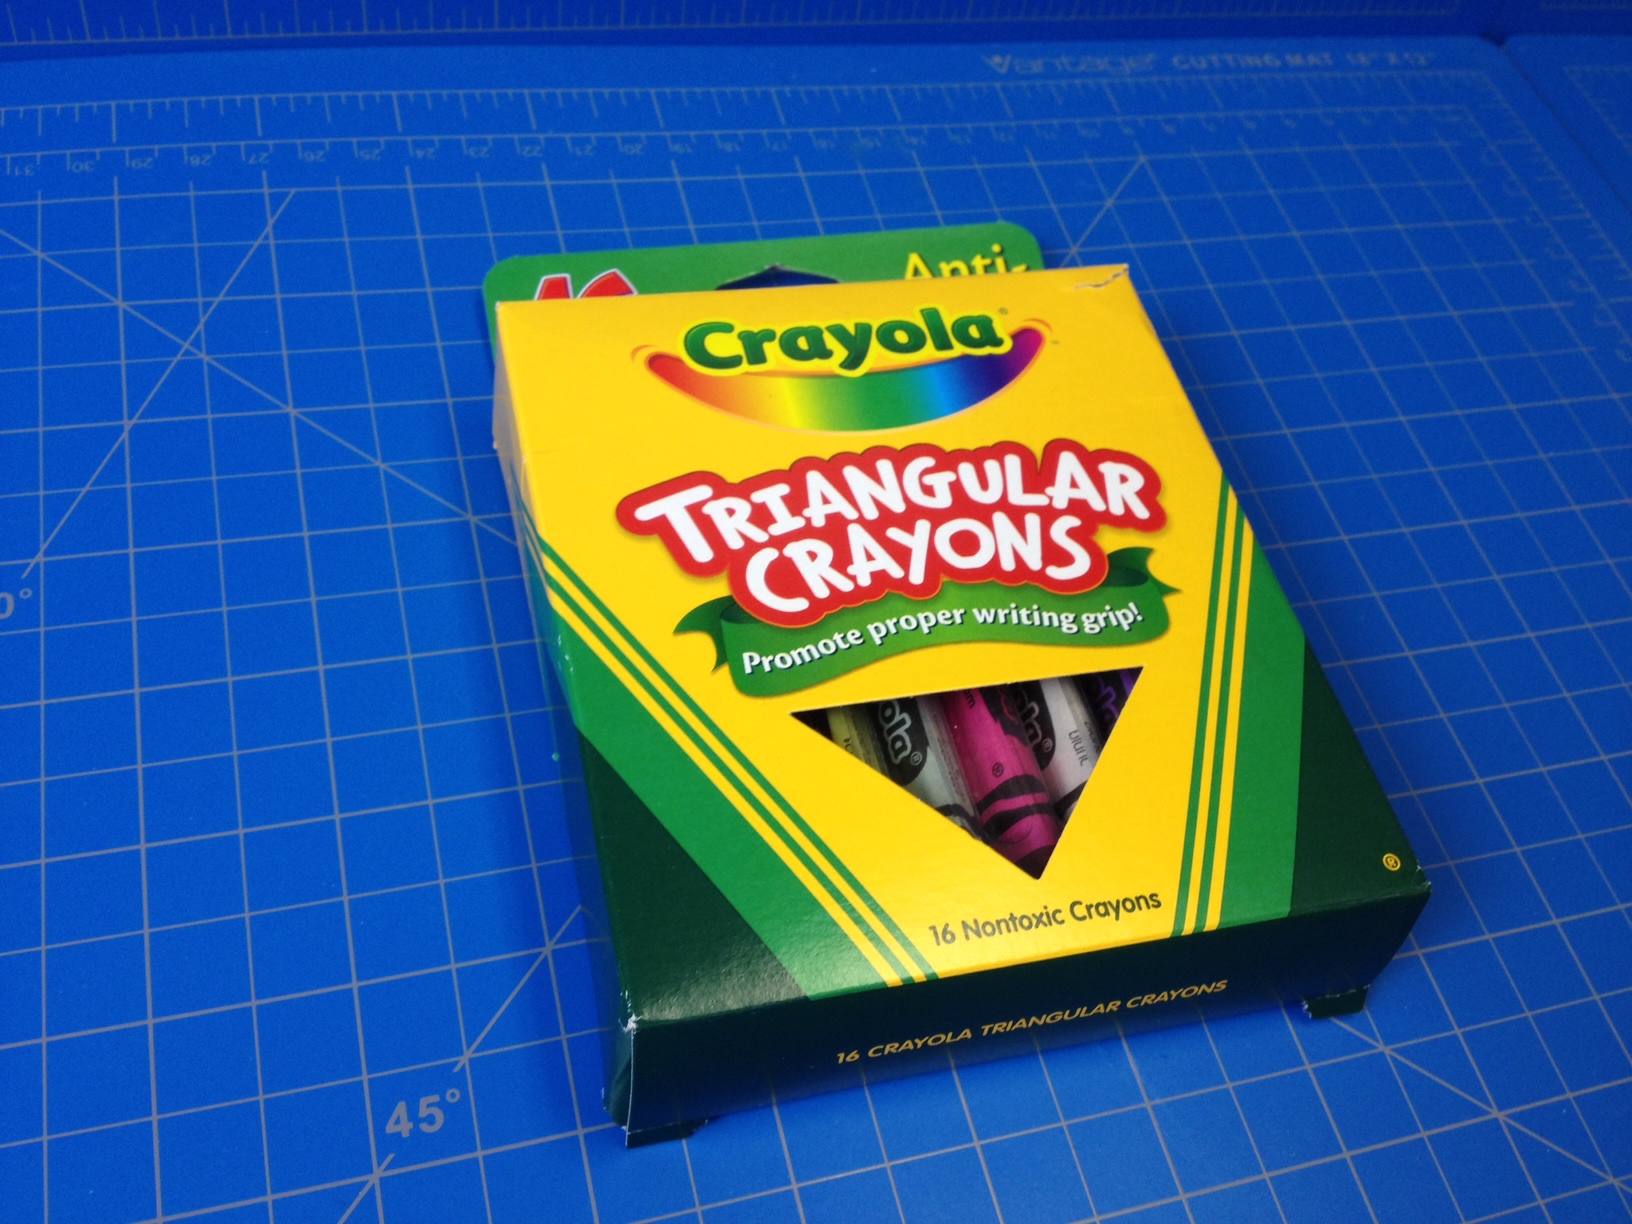 Review – Crayola Triangular Crayons